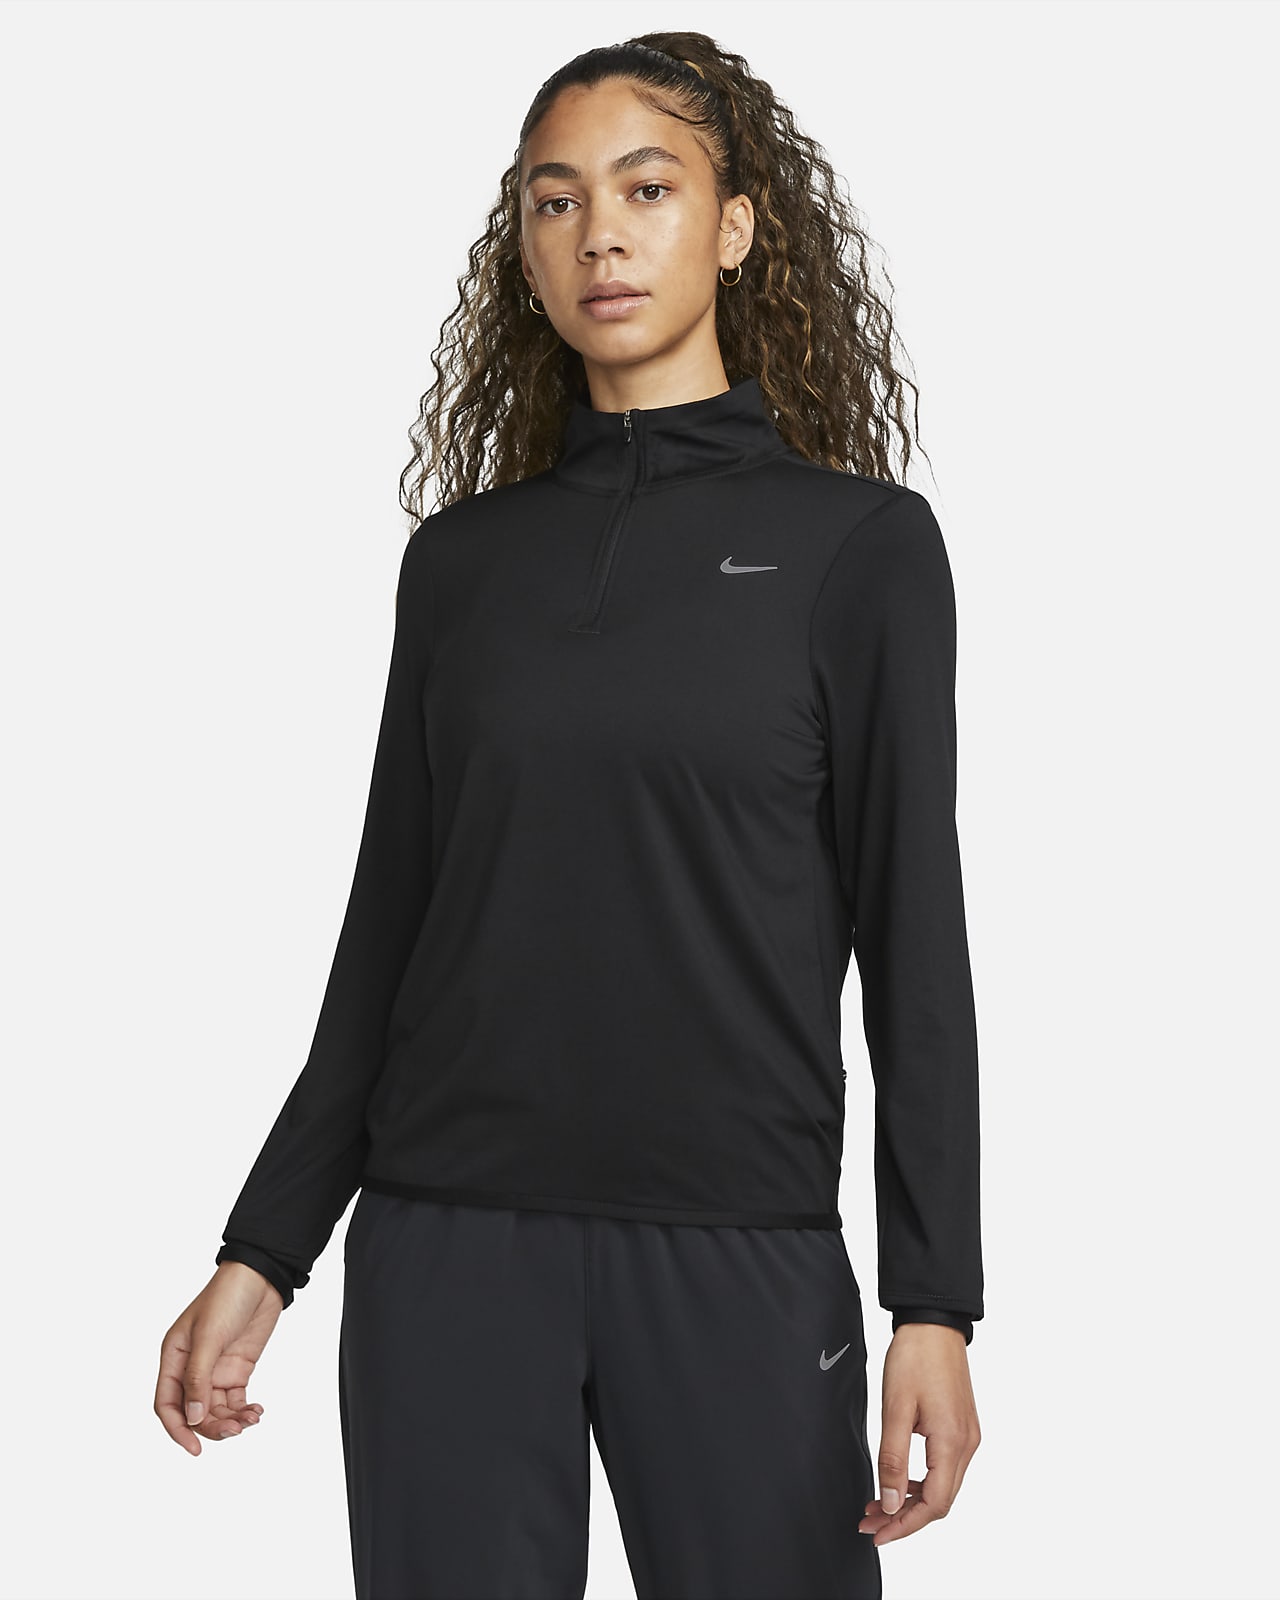 Dámské běžecké tričko Nike Swift Element se čtvrtinovým zipem a UV ochranou